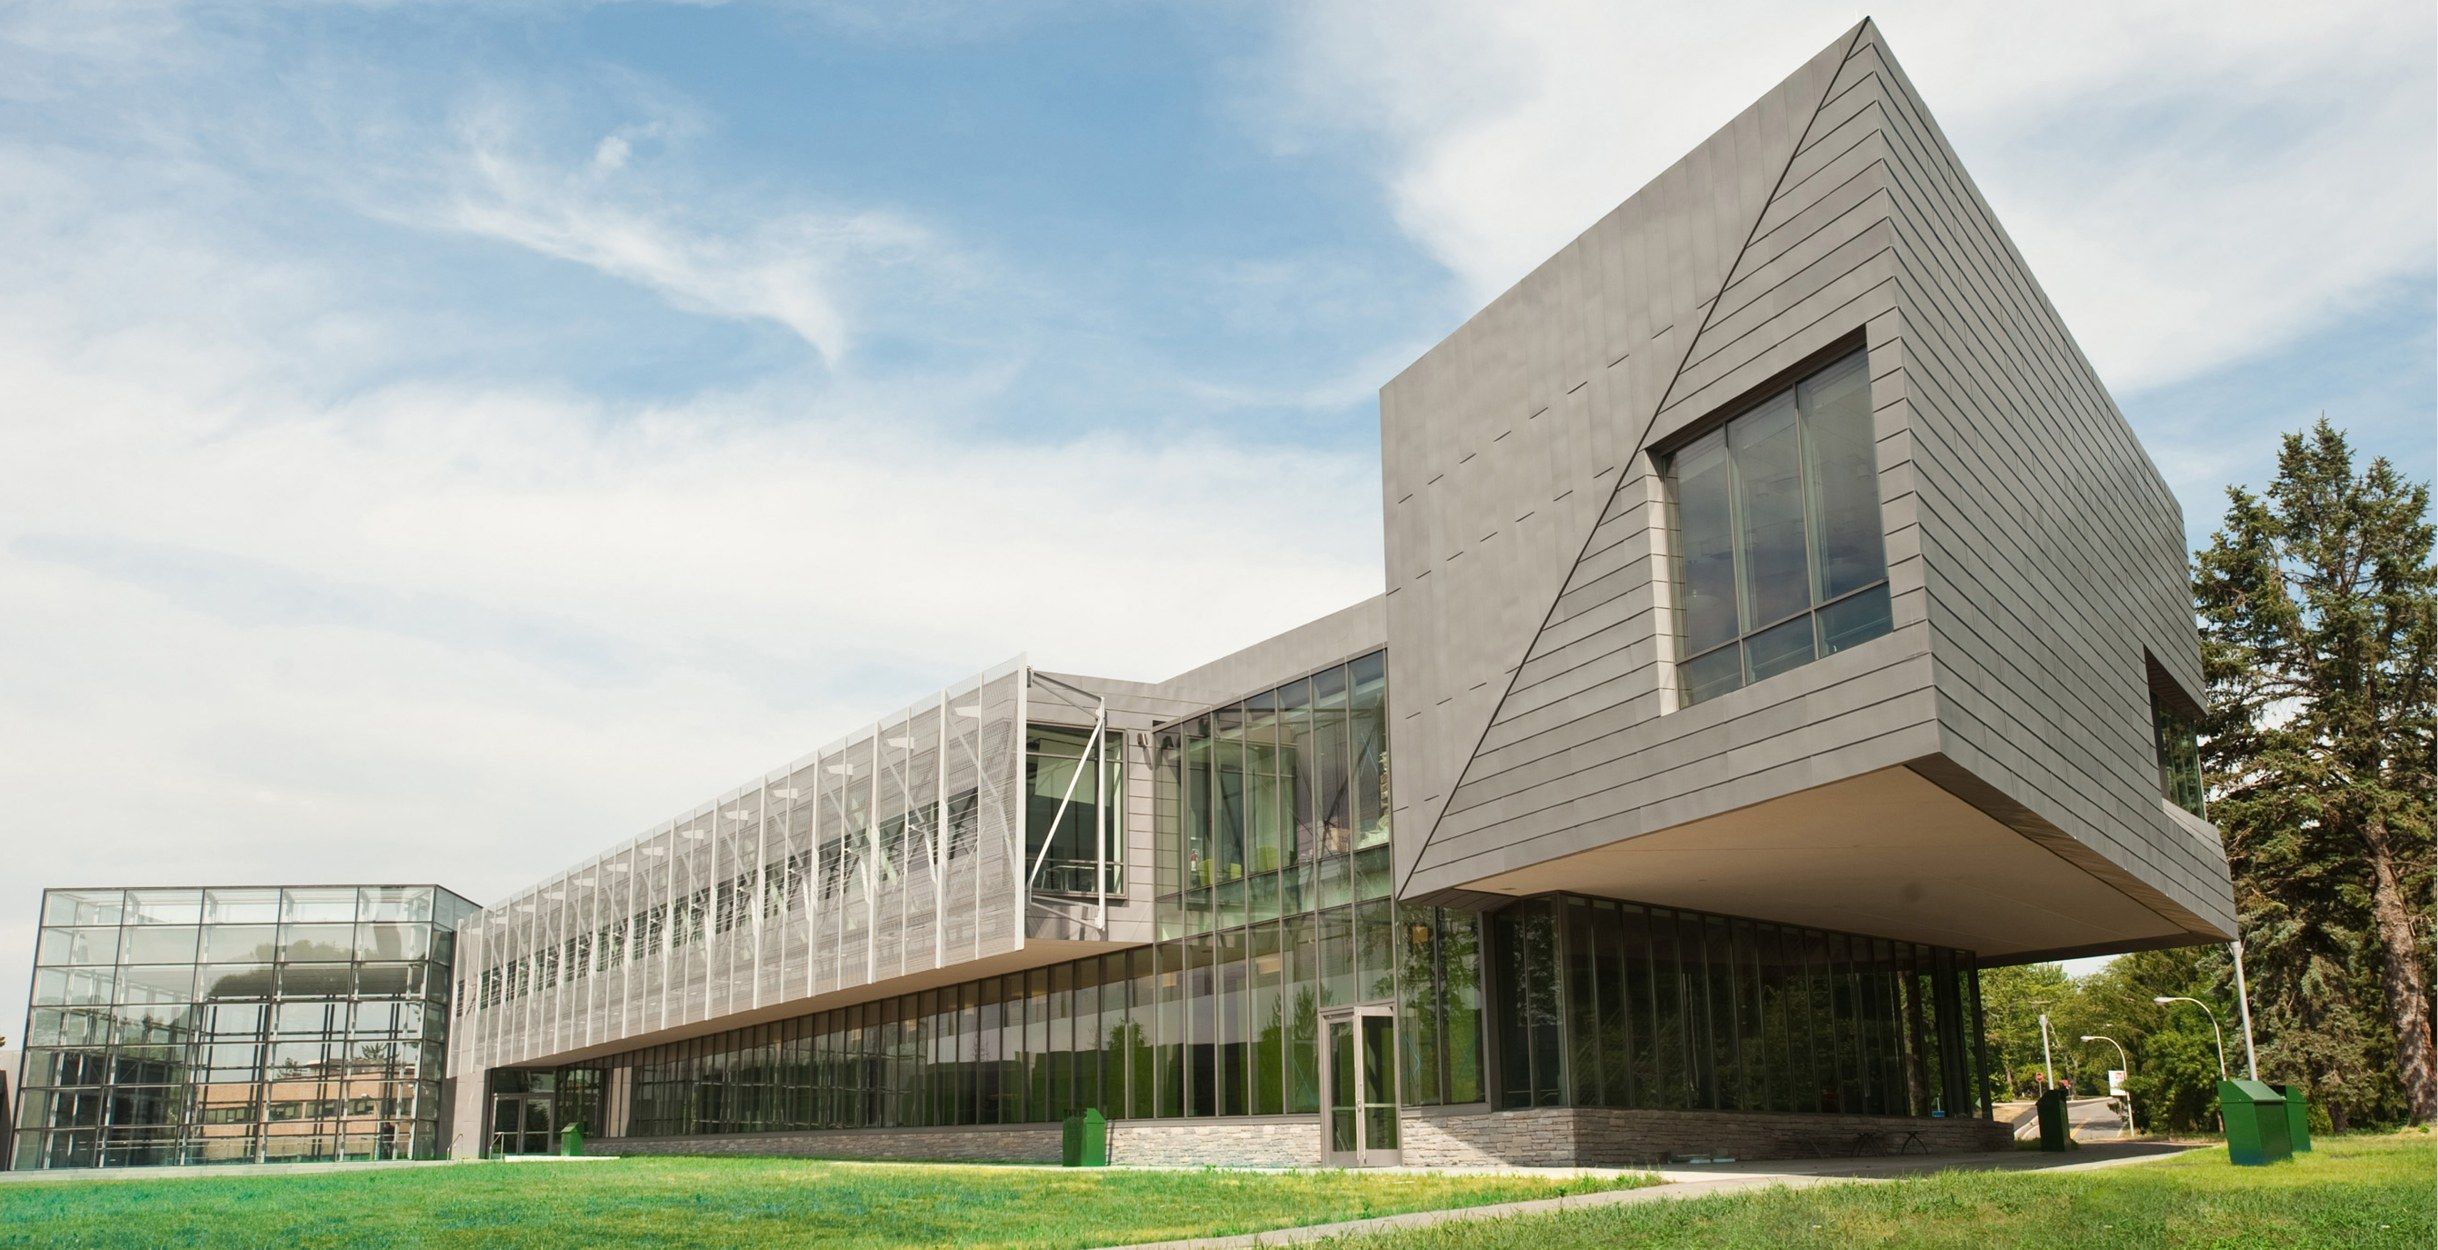 Westchester Community College – Gateway Center